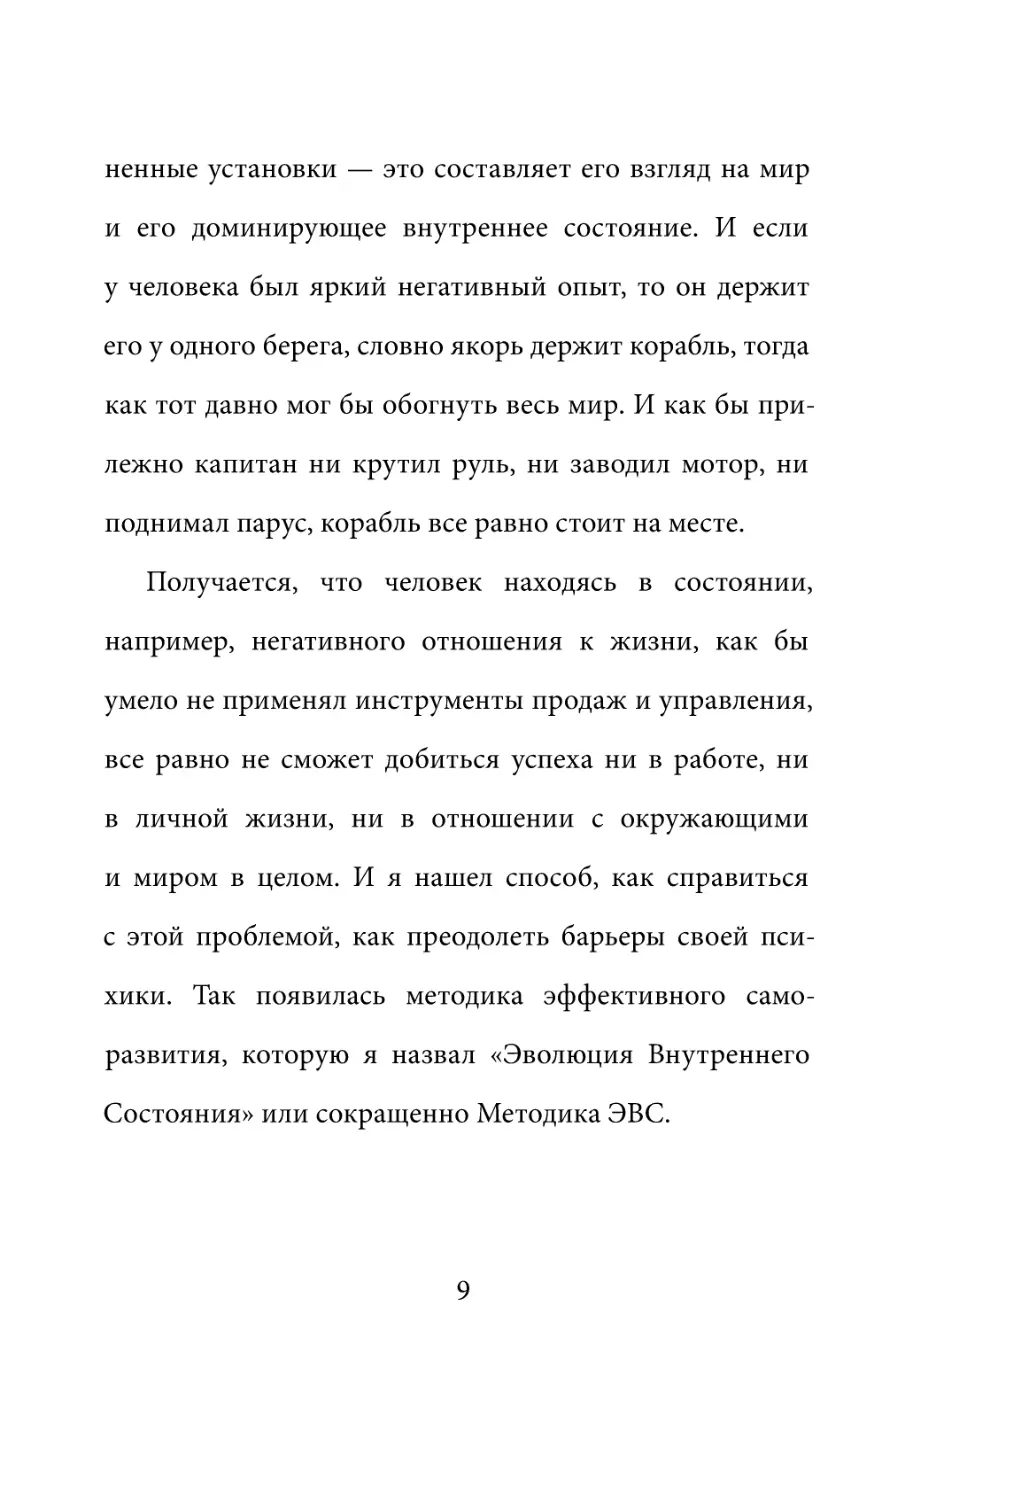 Sergey_Filippov_Dnevnik_samorazvitia_Evolyutsia_Vnutrennego_Sostoyania_9.pdf (p.9)